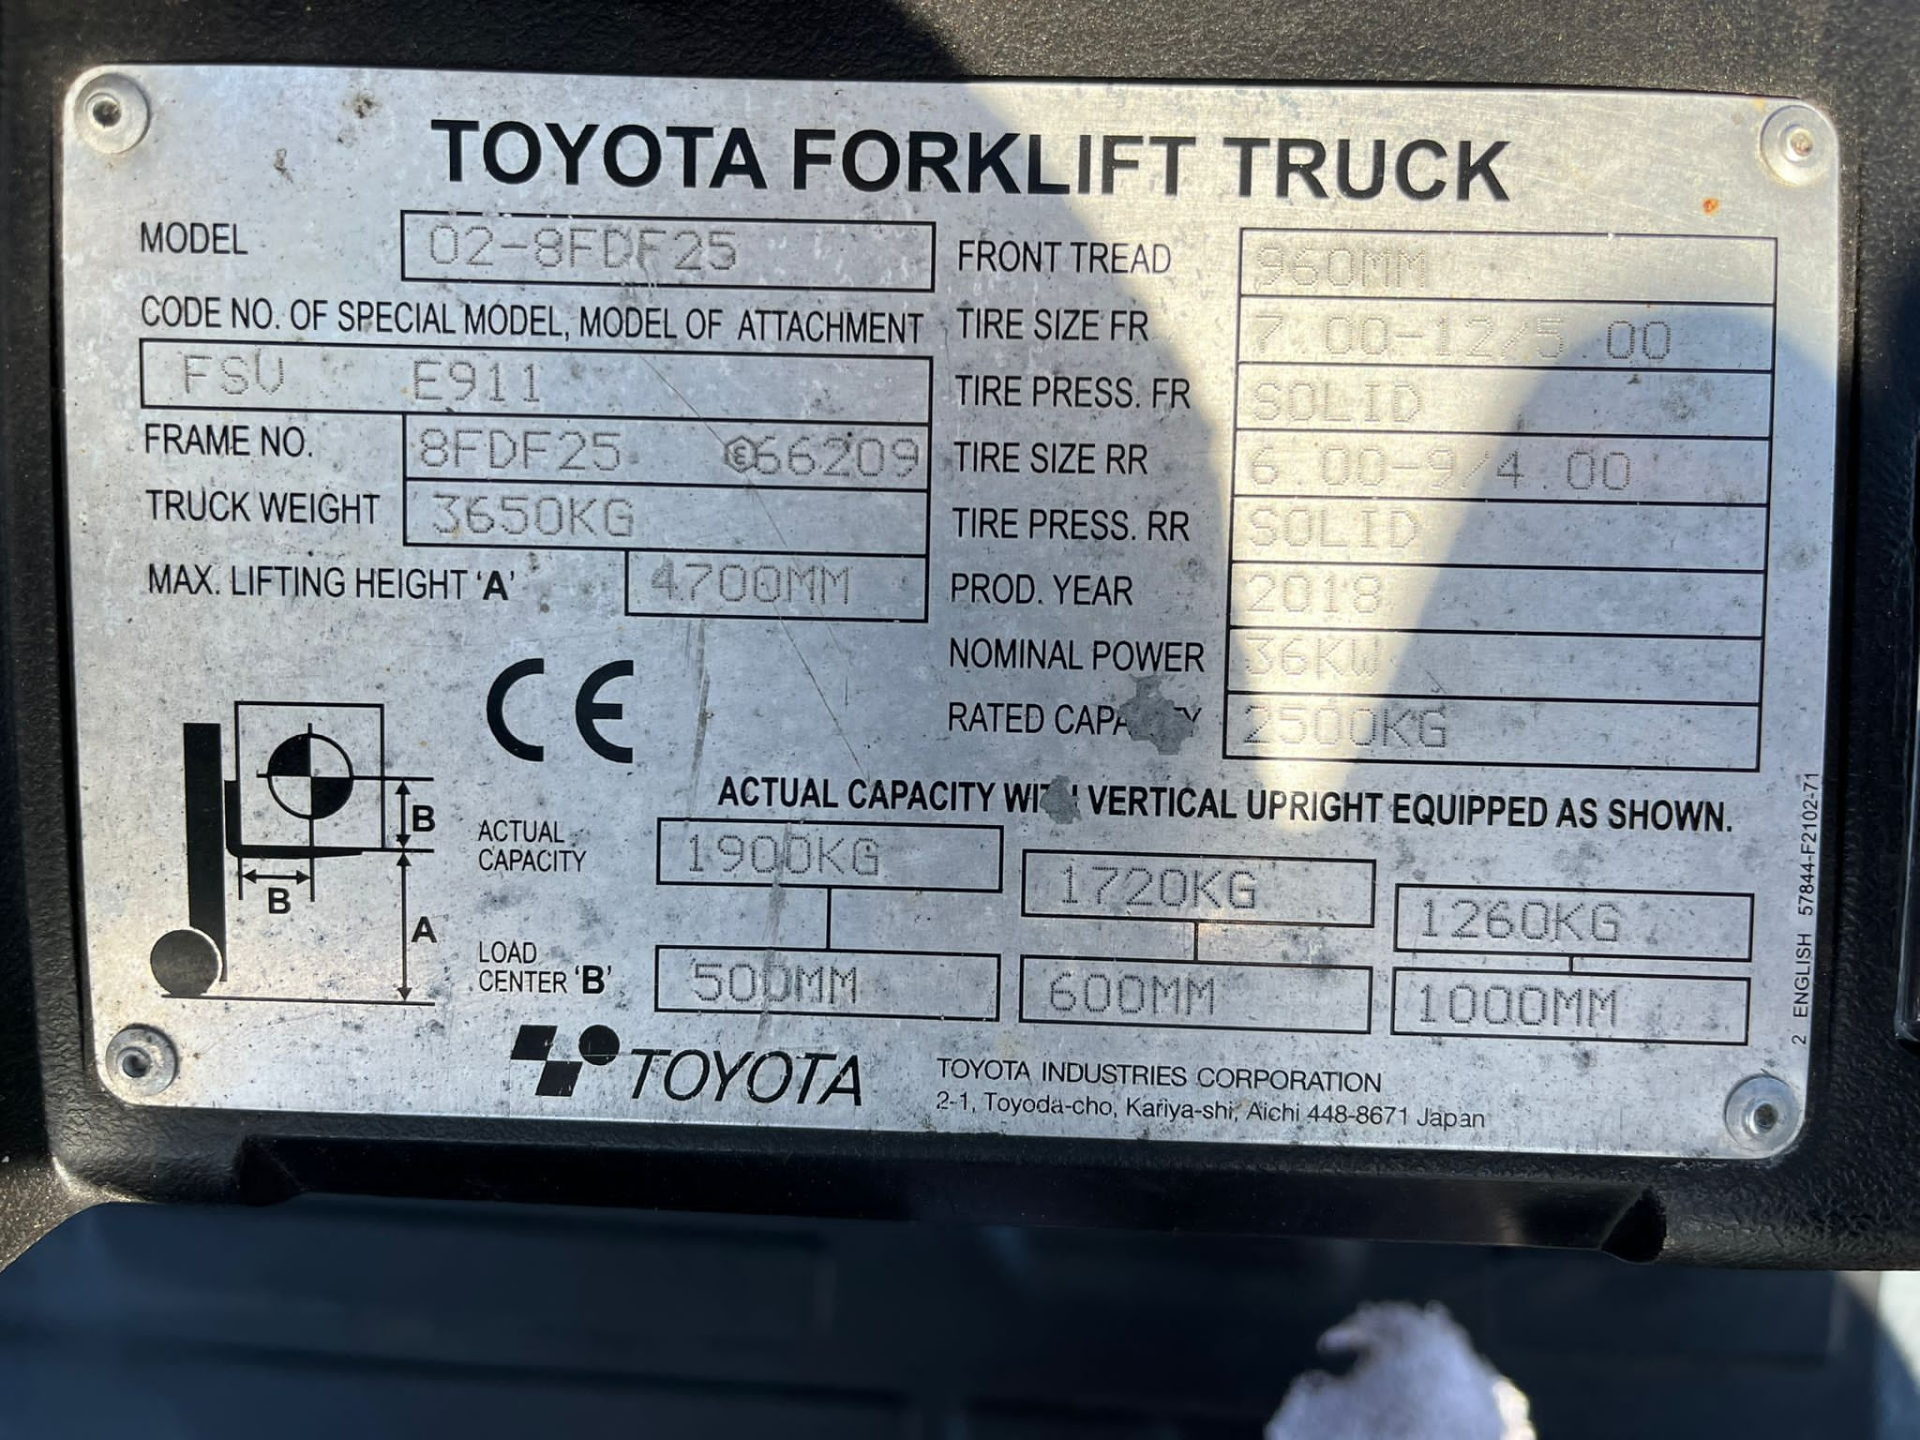 2018, TOYOTA - 2.5 Tonne Diesel Forklift - Image 5 of 7